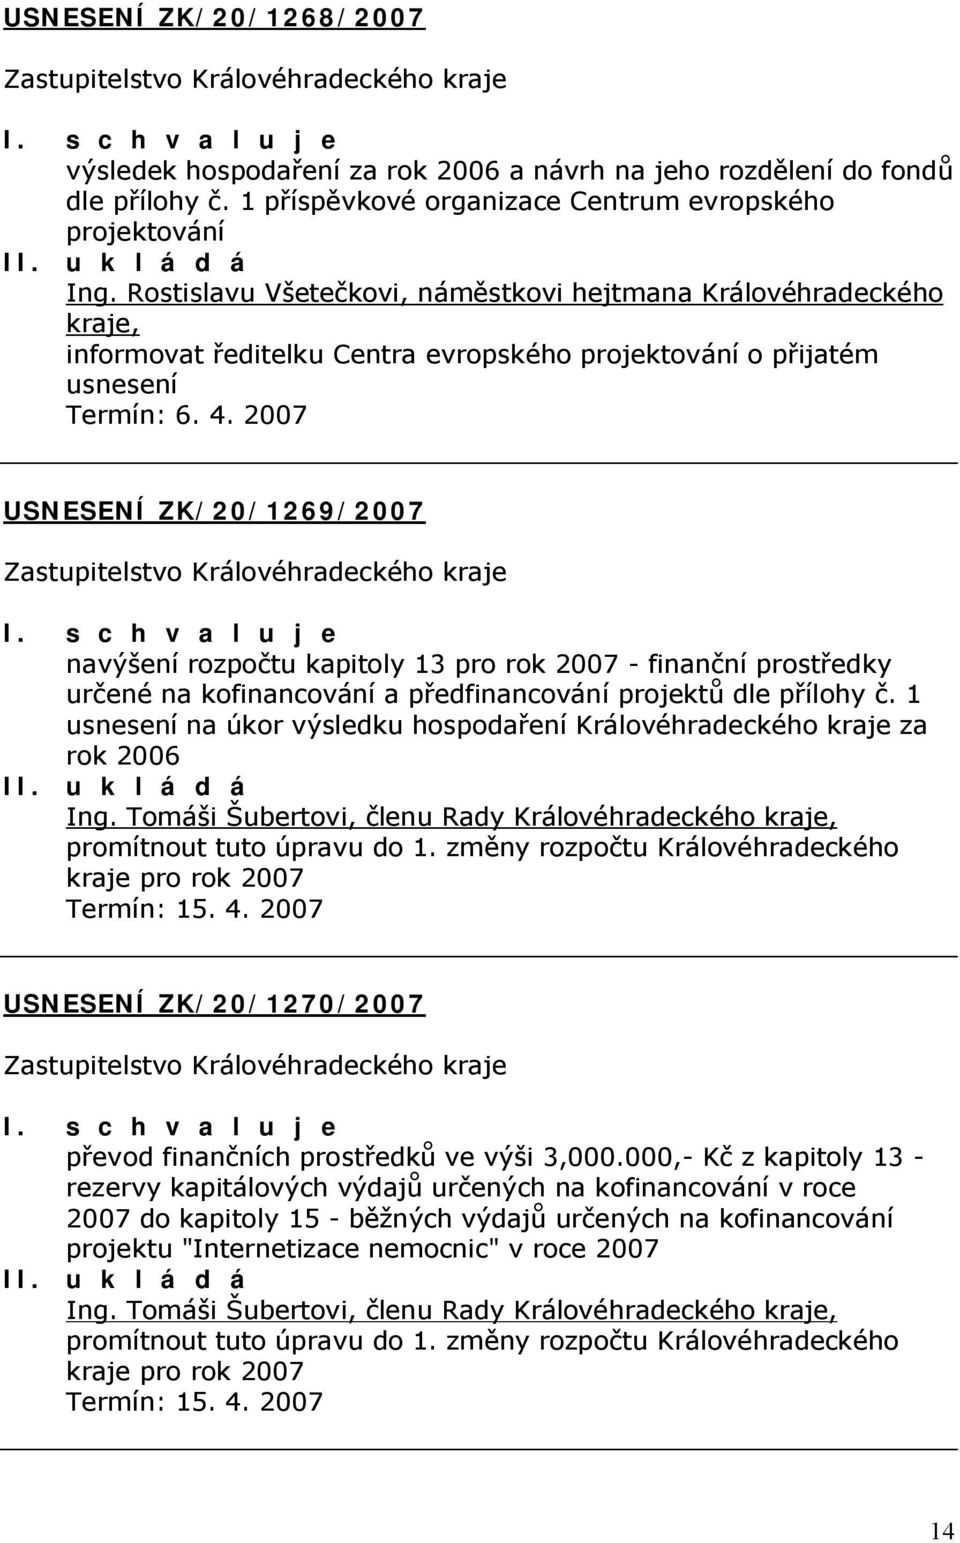 2007 USNESENÍ ZK/20/1269/2007 navýšení rozpočtu kapitoly 13 pro rok 2007 - finanční prostředky určené na kofinancování a předfinancování projektů dle přílohy č.